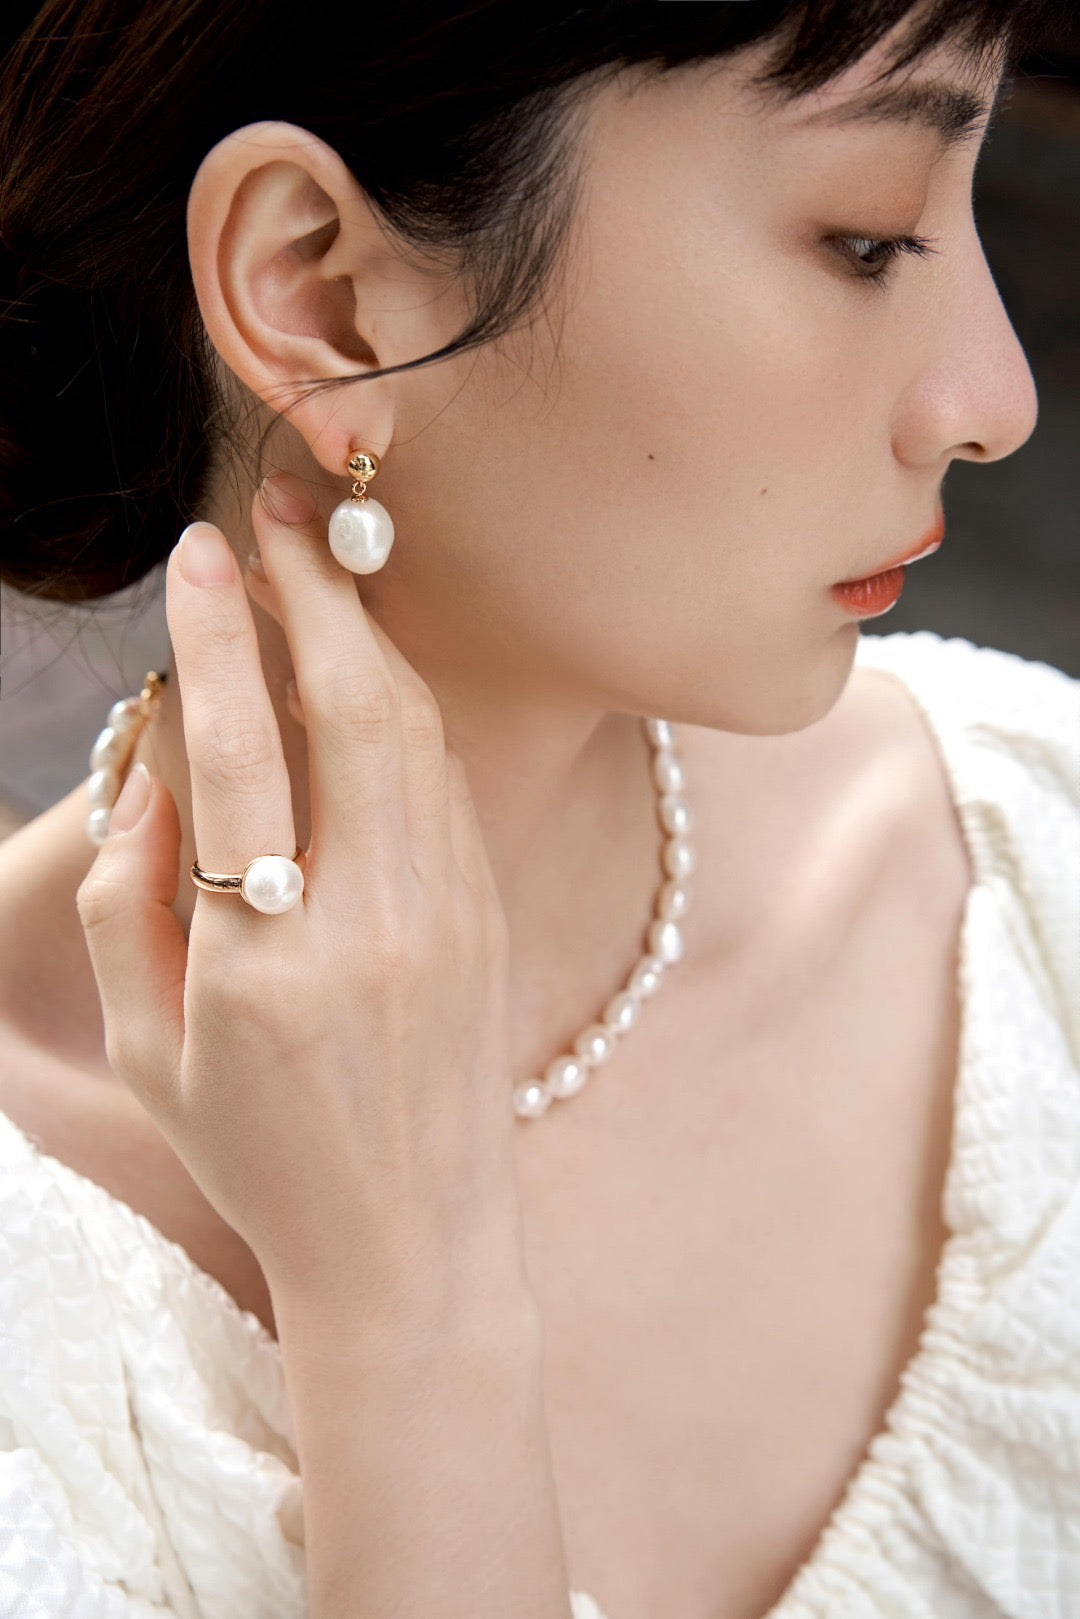 Large Irregular Baroque Pearl Earrings | Estincele Jewellery | Women's earrings | Pearl earrings